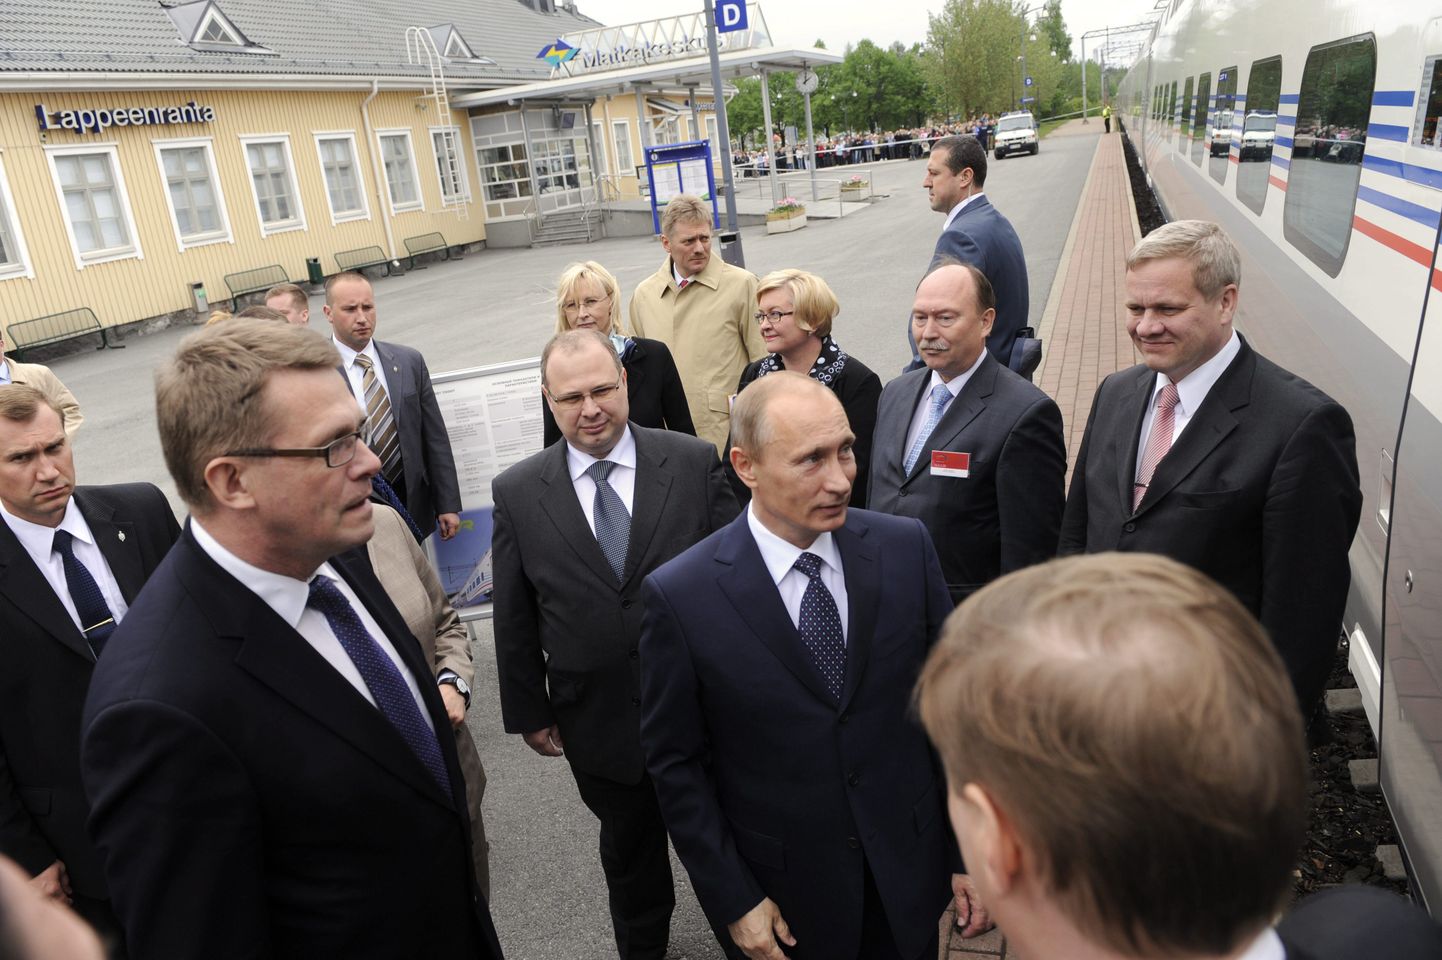 Soome peaminister Matti Vanhanen (ees vasakul) ja Vene valitsusjuht Vladimir Putin koos saatjatega eile Lappeenrantas.